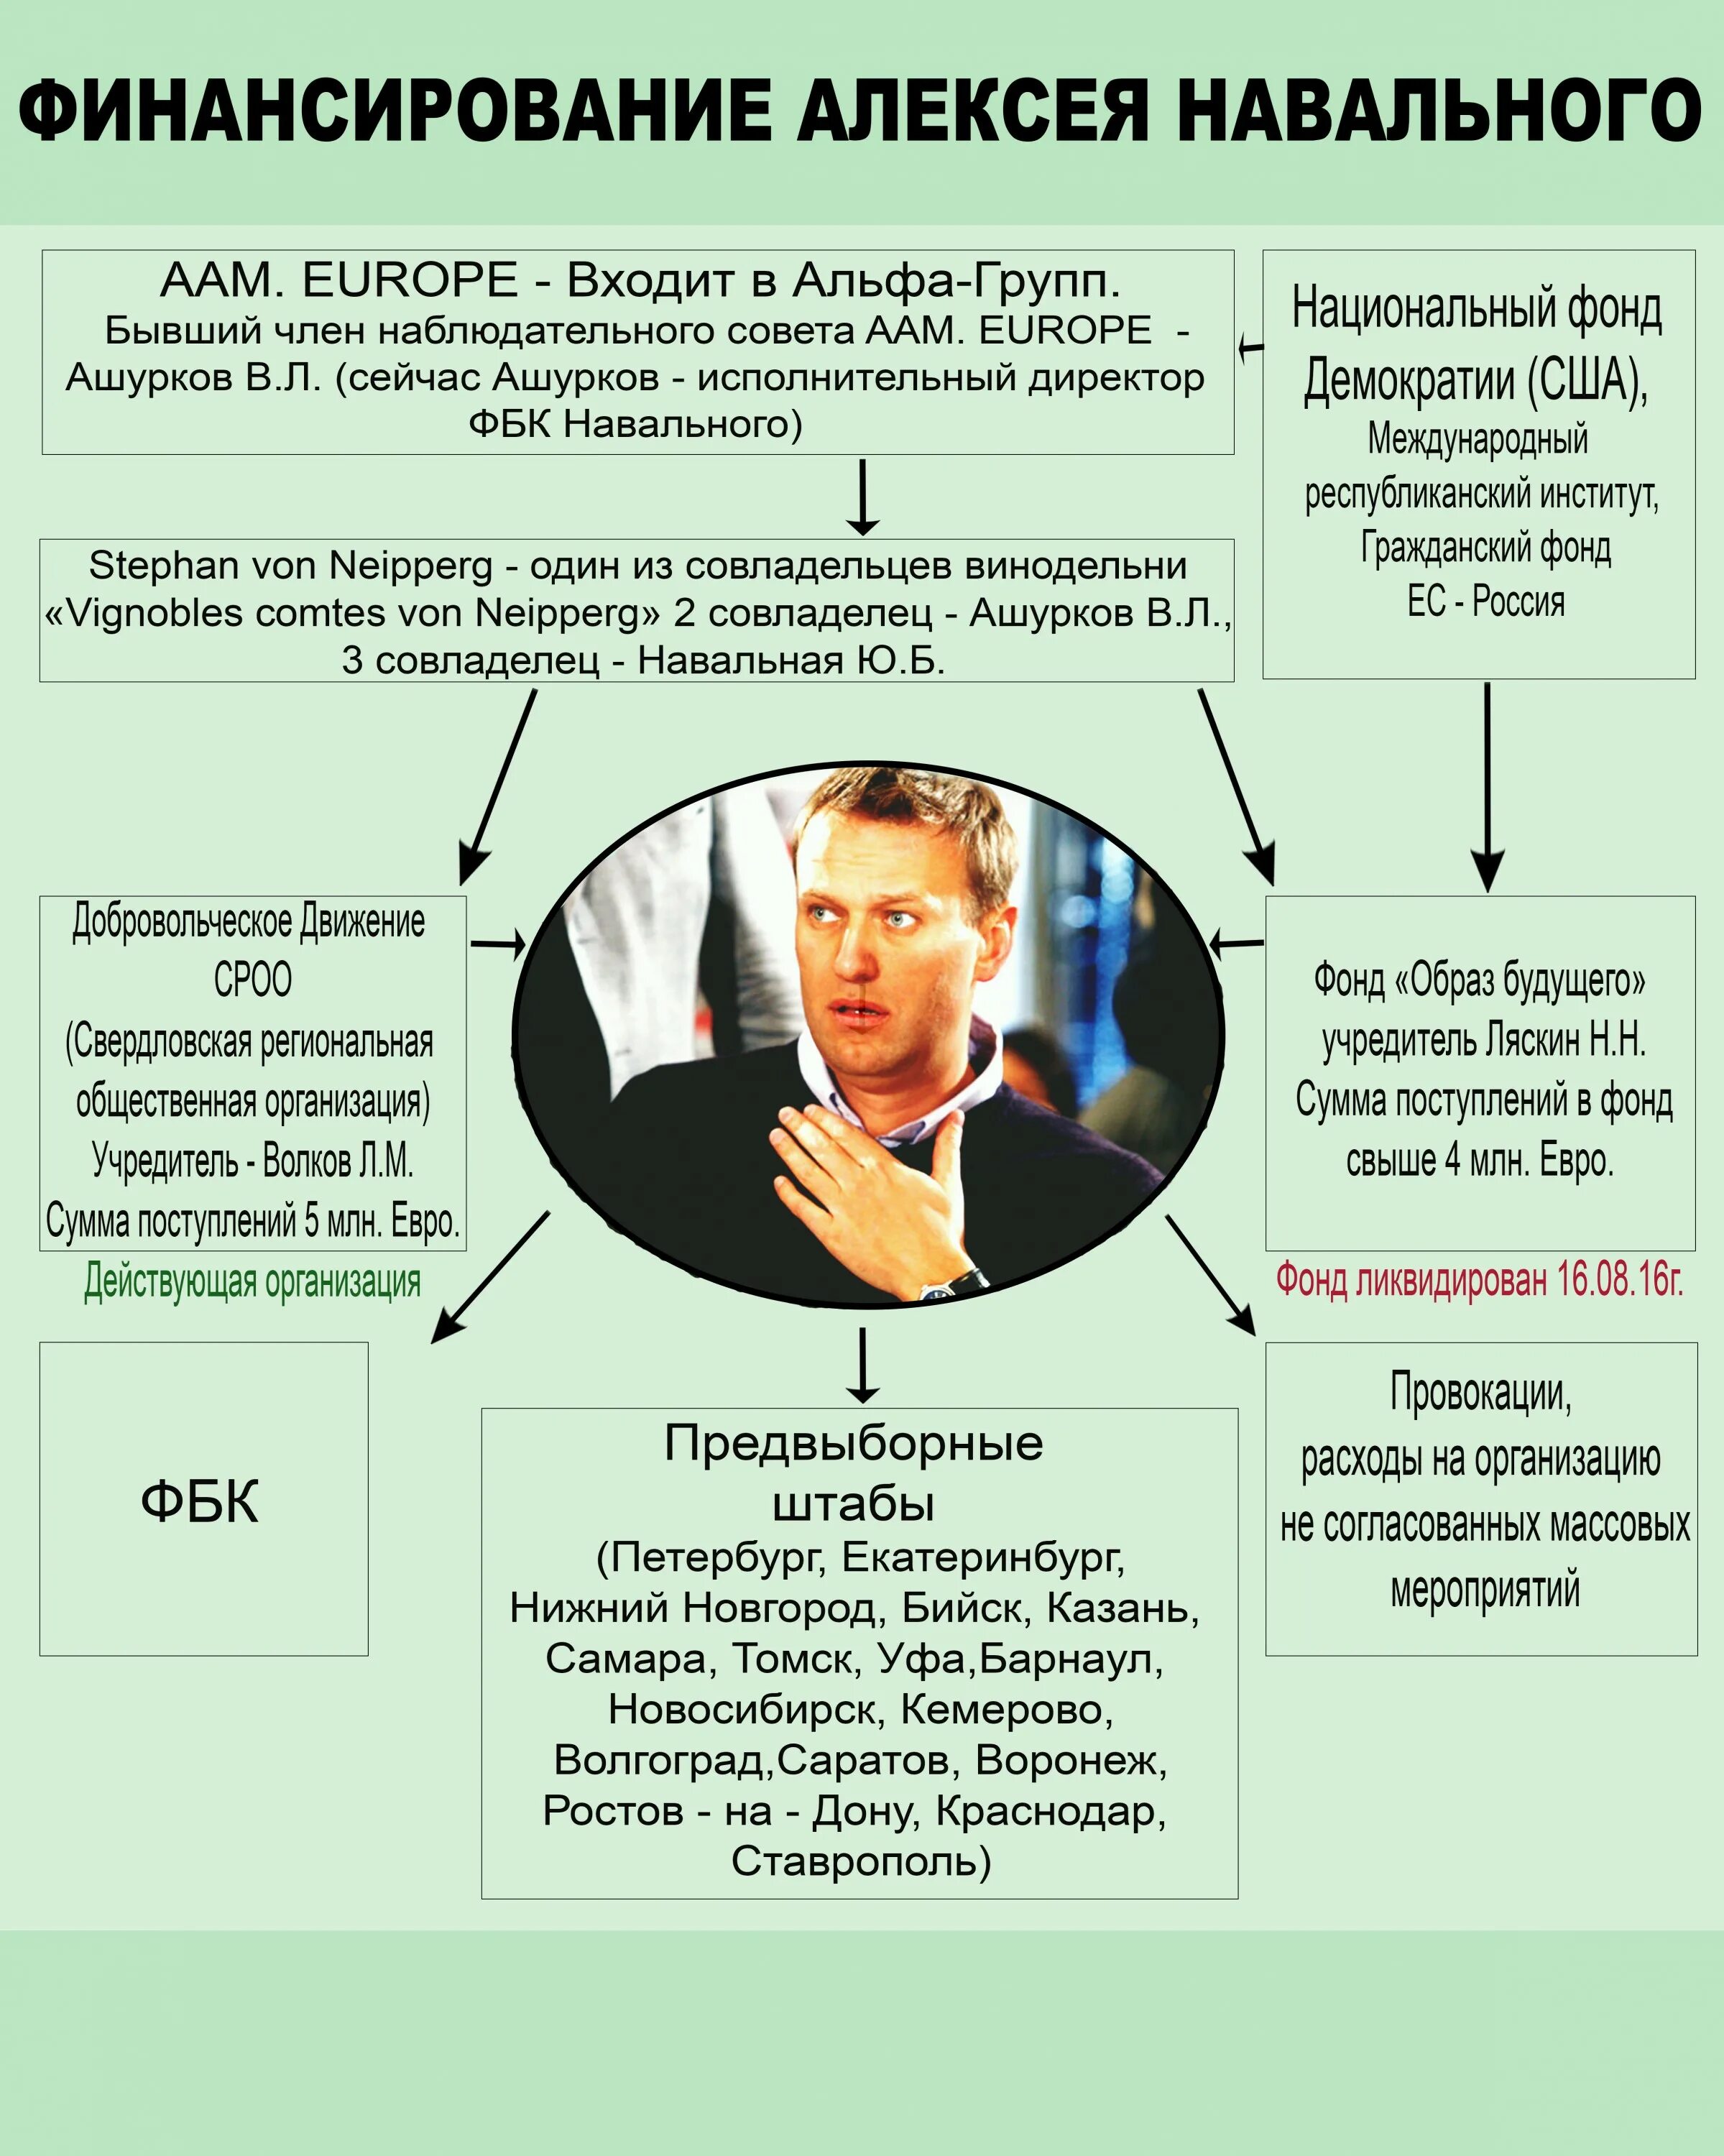 Откуда появился навальный. Финансирование Навального. Фонд Навального. Навальный откуда деньги. Кем финансировался Навальный.